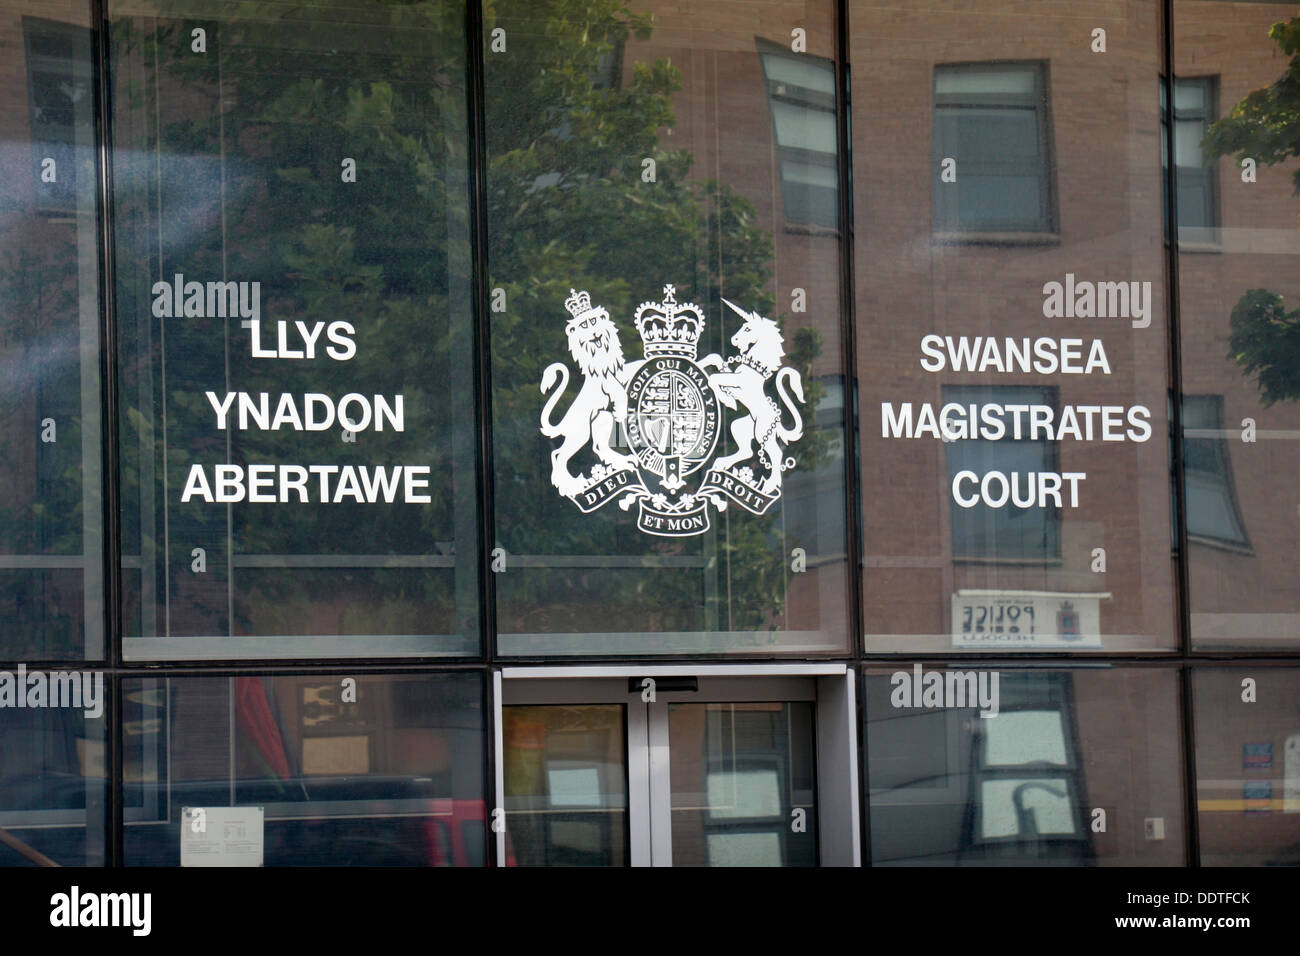 Cour de magistrats de Swansea, Swansea, West Glamorgan, Pays de Galles. Banque D'Images